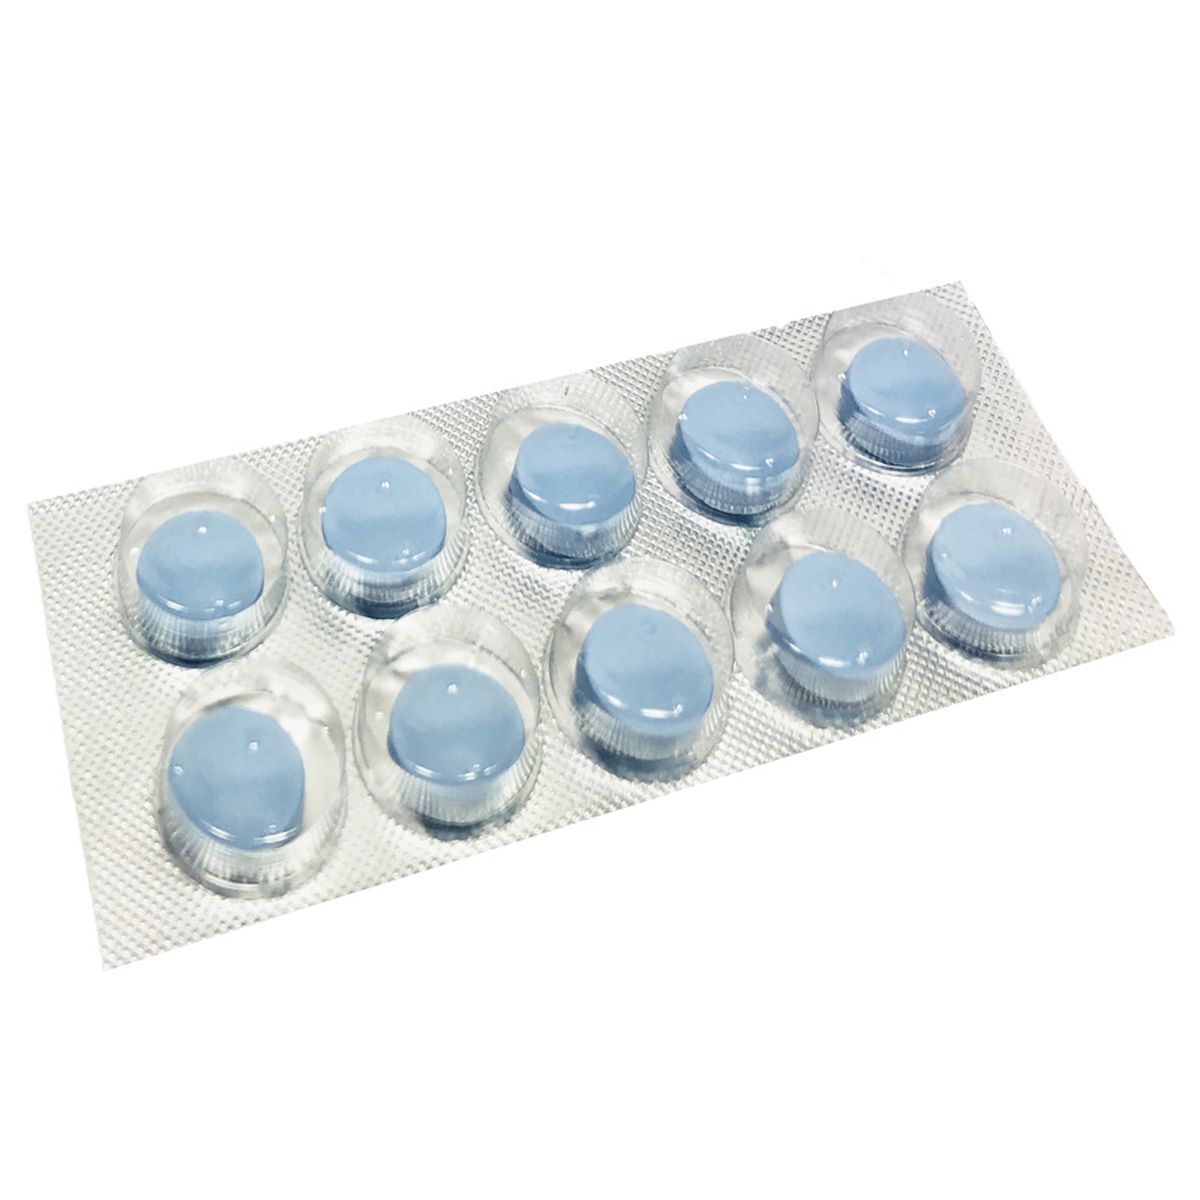 Pharmaquest - Blue Superstar Nahrungsergänzung Libido 10 stk